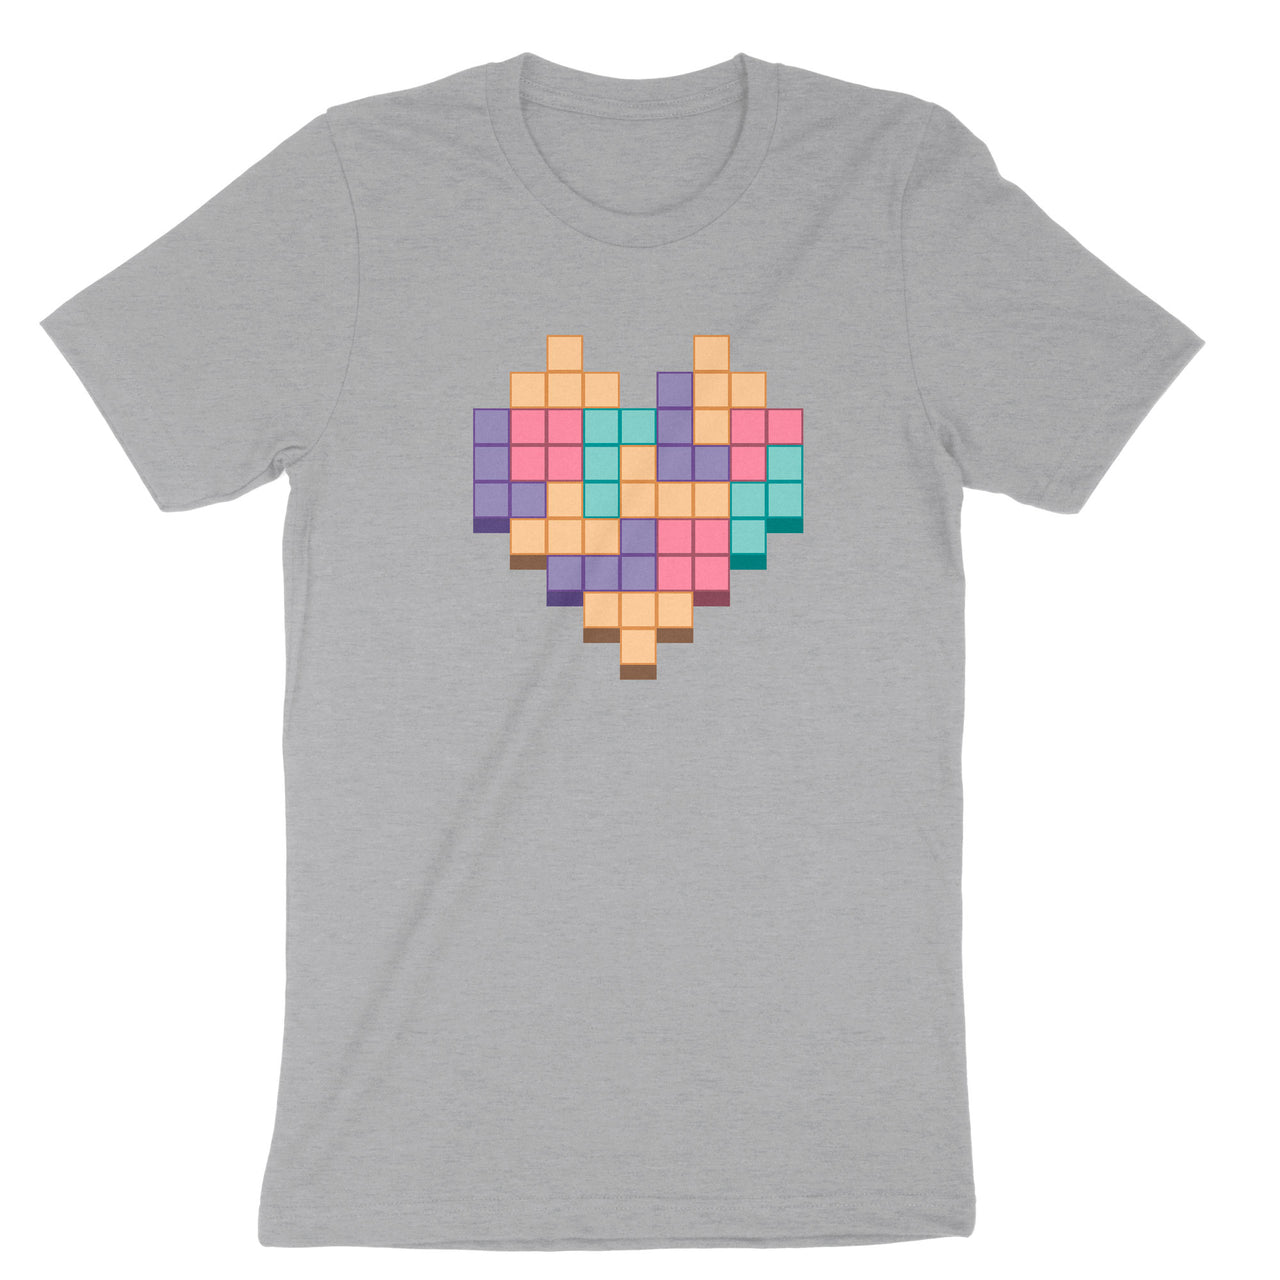 Pixelated Heart T-Shirt - Block Heart Shirt - Gamer Shirt